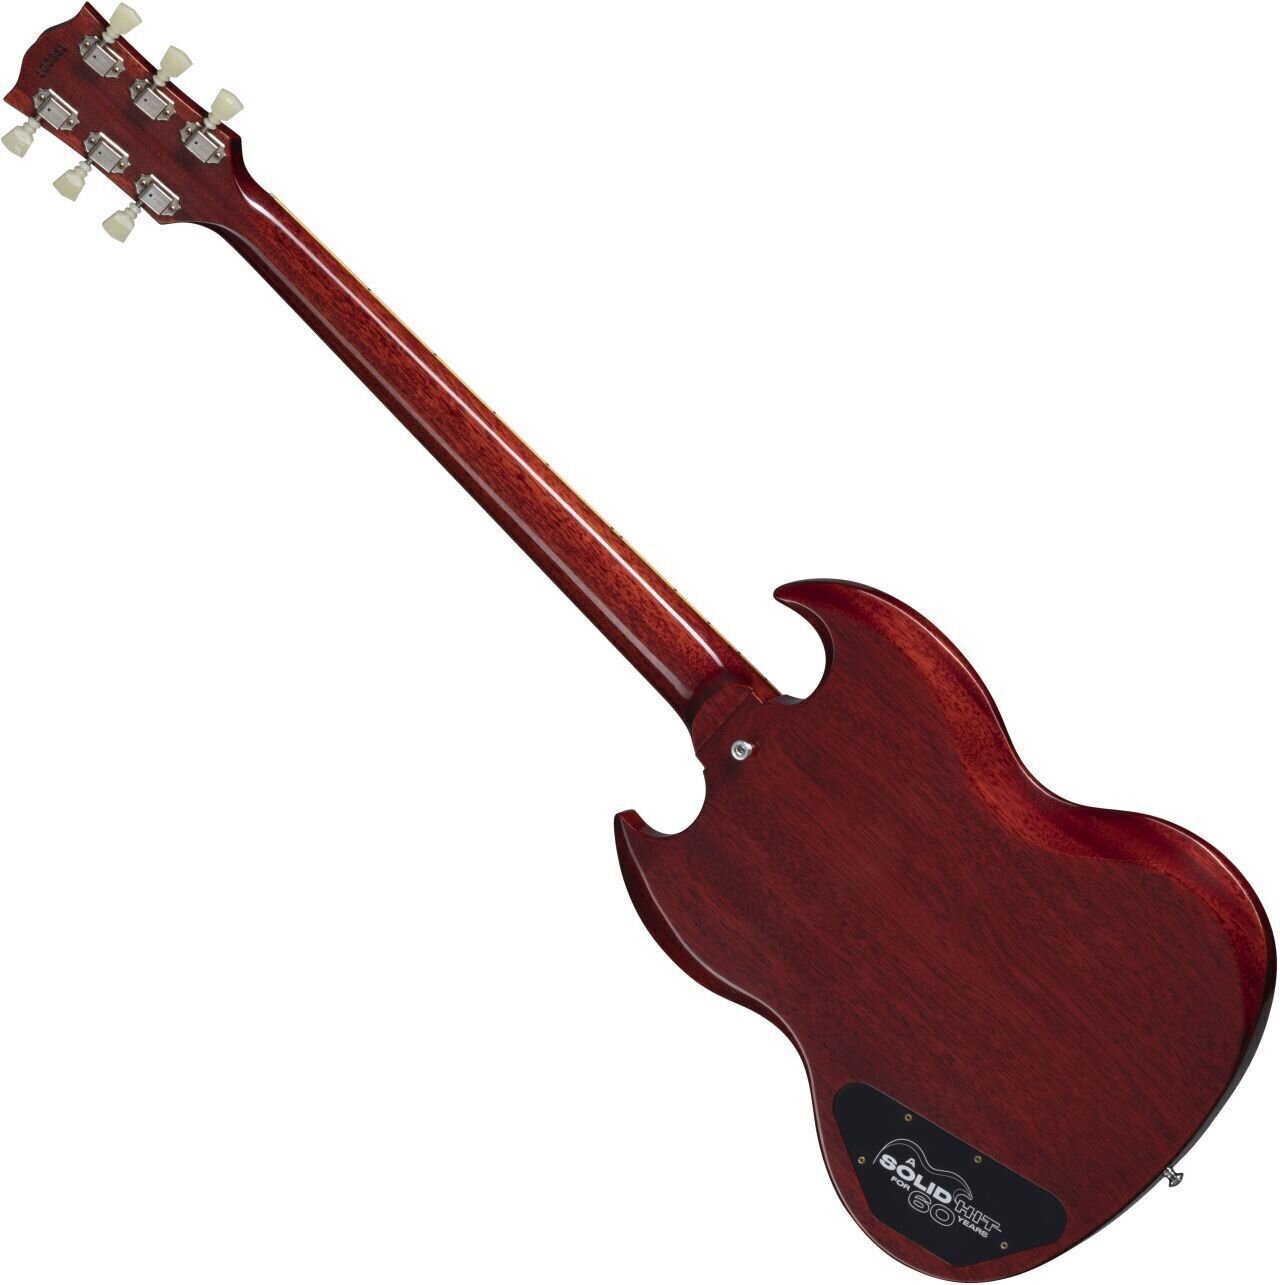 Gibson Sg Les Paul 1961 60th Ann. 2h Trem Rw - Vos Cherry Red - Double Cut E-Gitarre - Variation 1